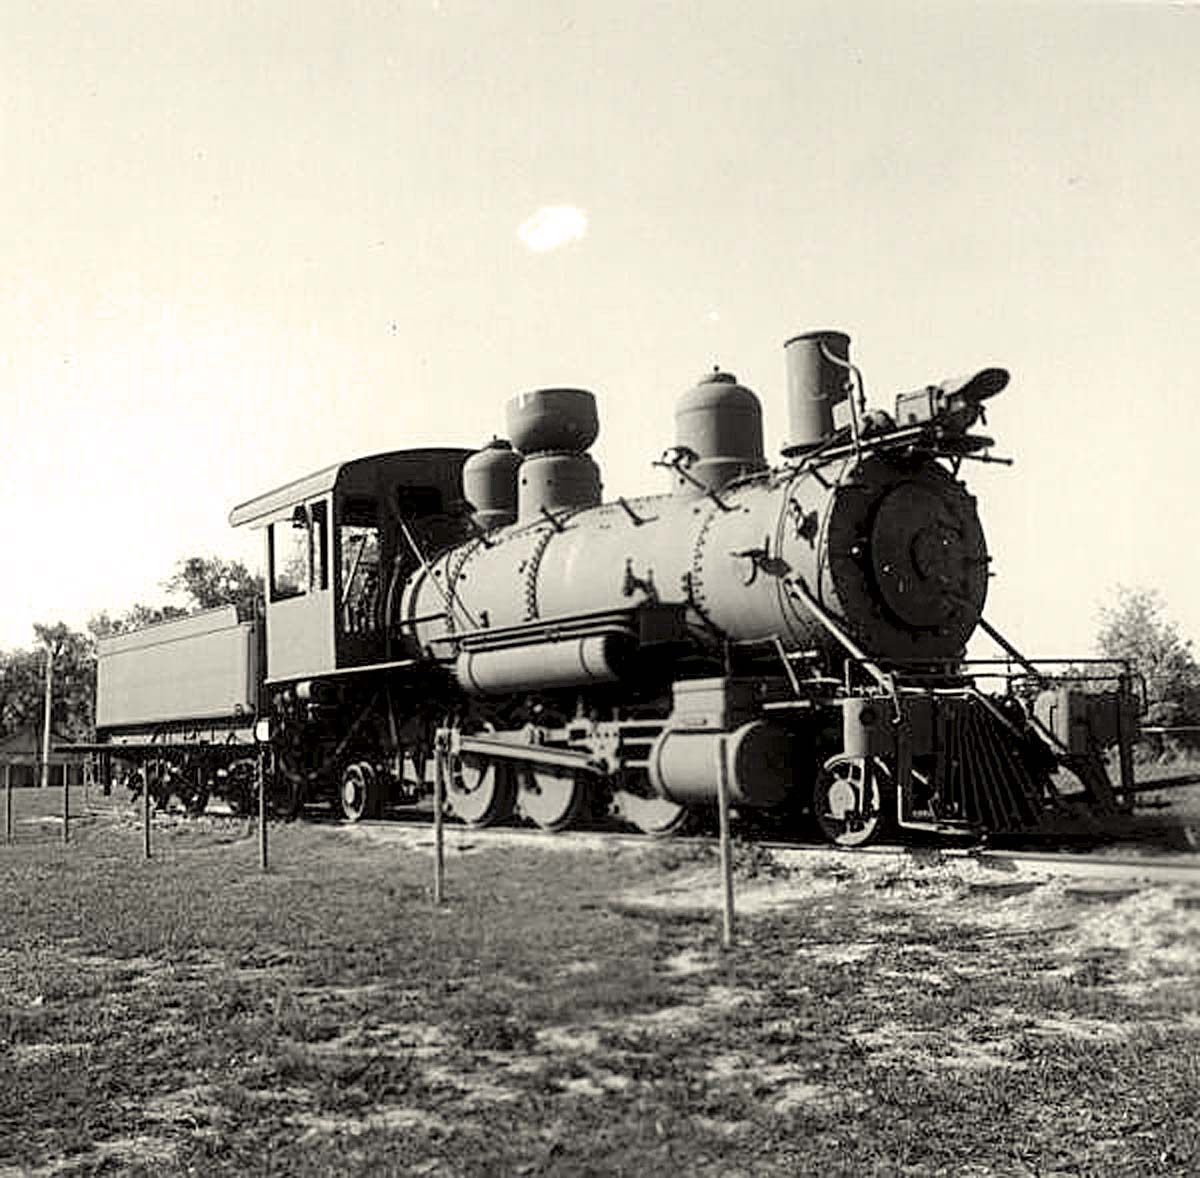 Zolfo Springs. Steam locomotive, 1970